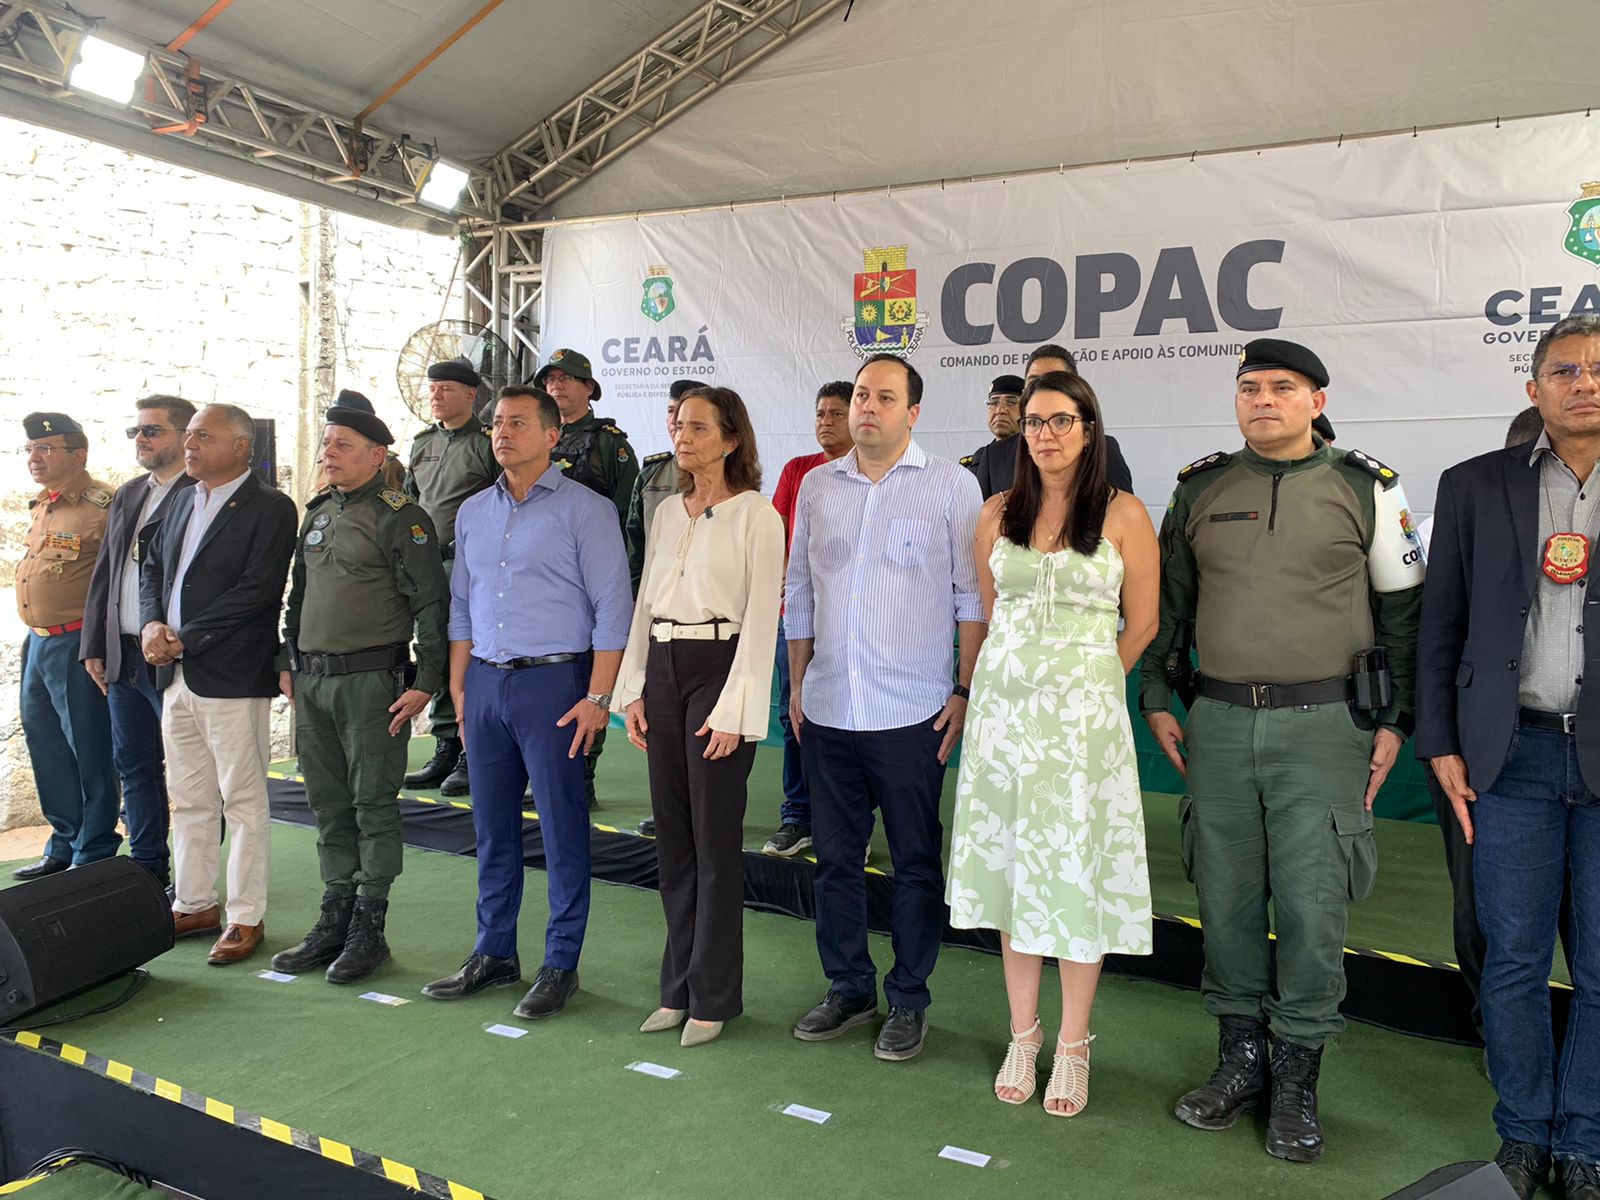 Defensoria prestigia entrega de base do Copac no Vicente Pinzón e participa de mais uma edição do projeto Acolher